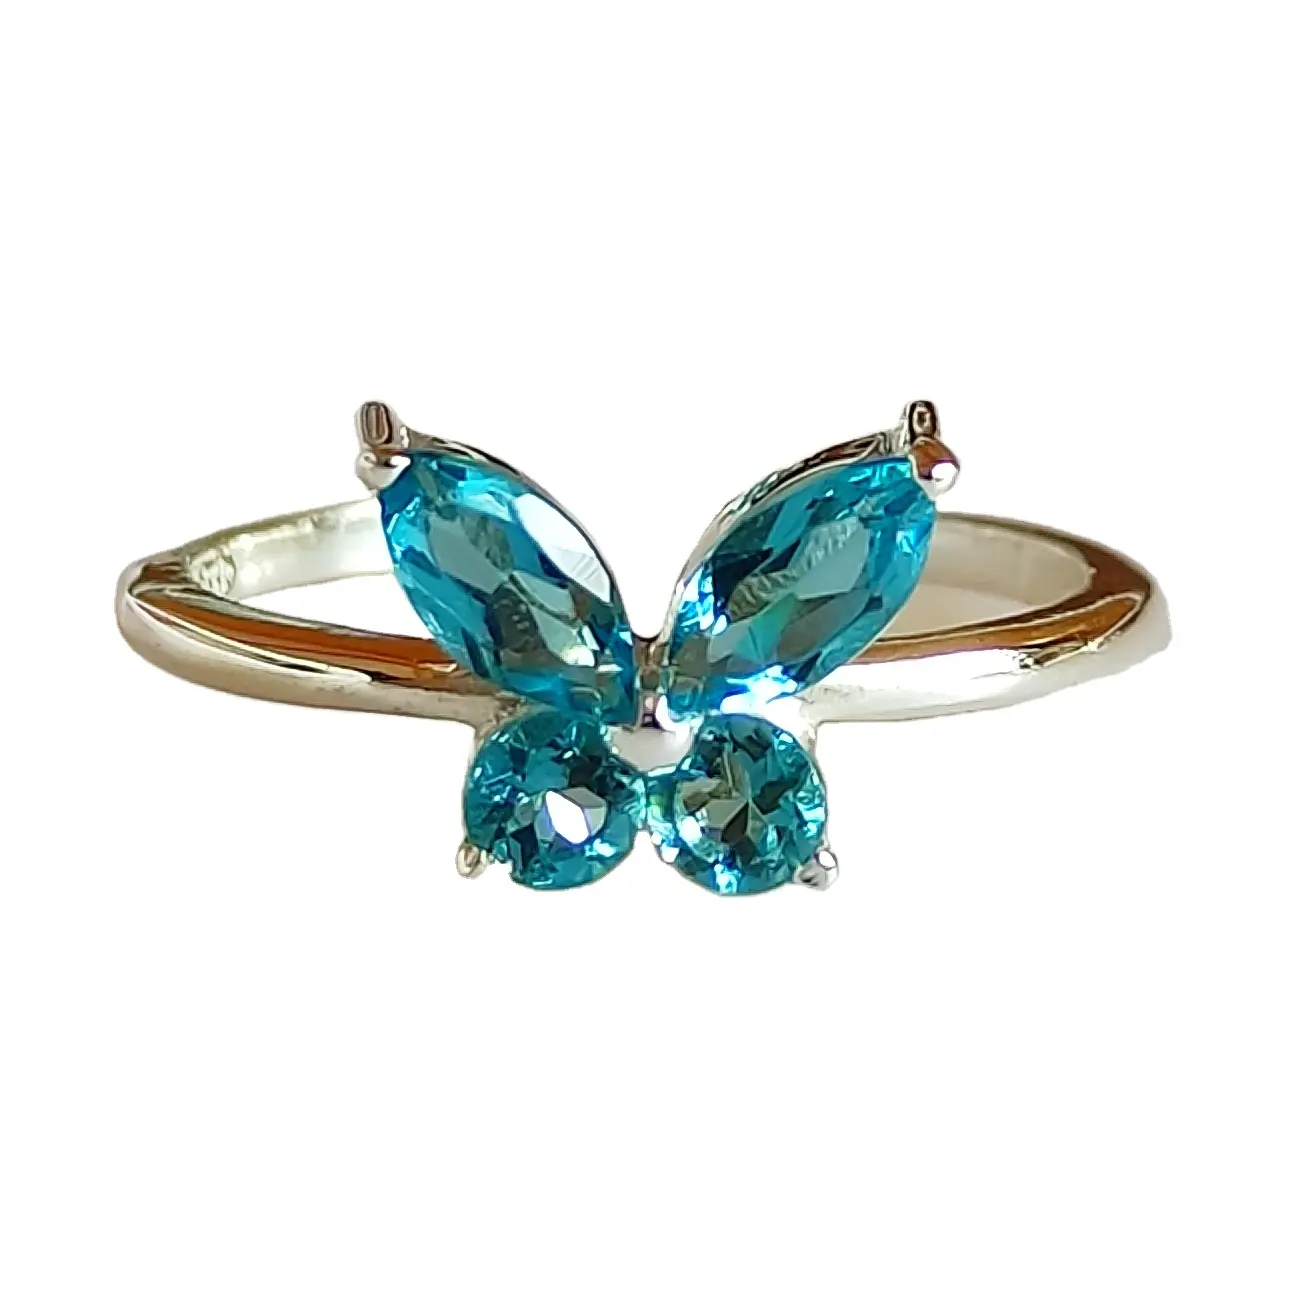 Desain terbaru London cincin murni perak Topaz biru 925 untuk wanita cincin perhiasan halus batu Topaz kubik biru Zirconia anak perempuan